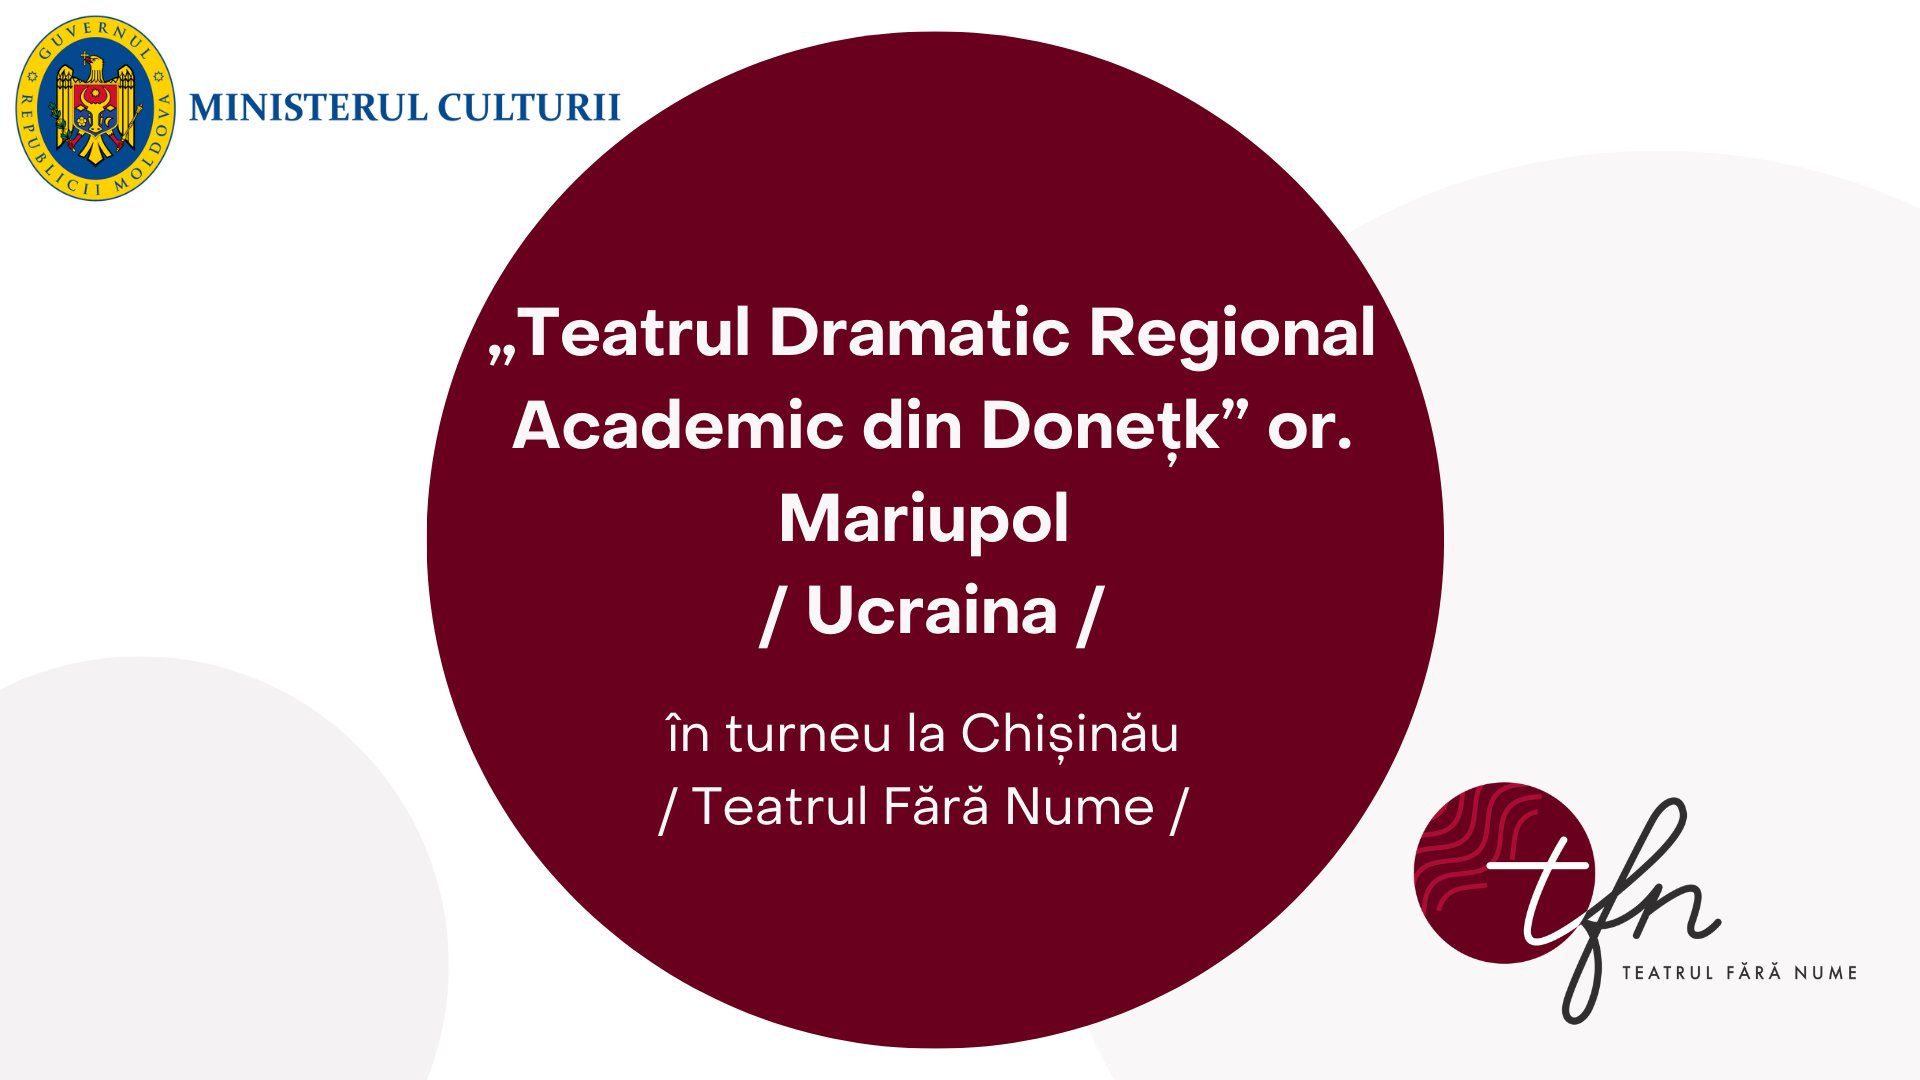 Teatrul Dramatic Regional Academic din Donețk” or. Mariupol / KRIK NAŢII